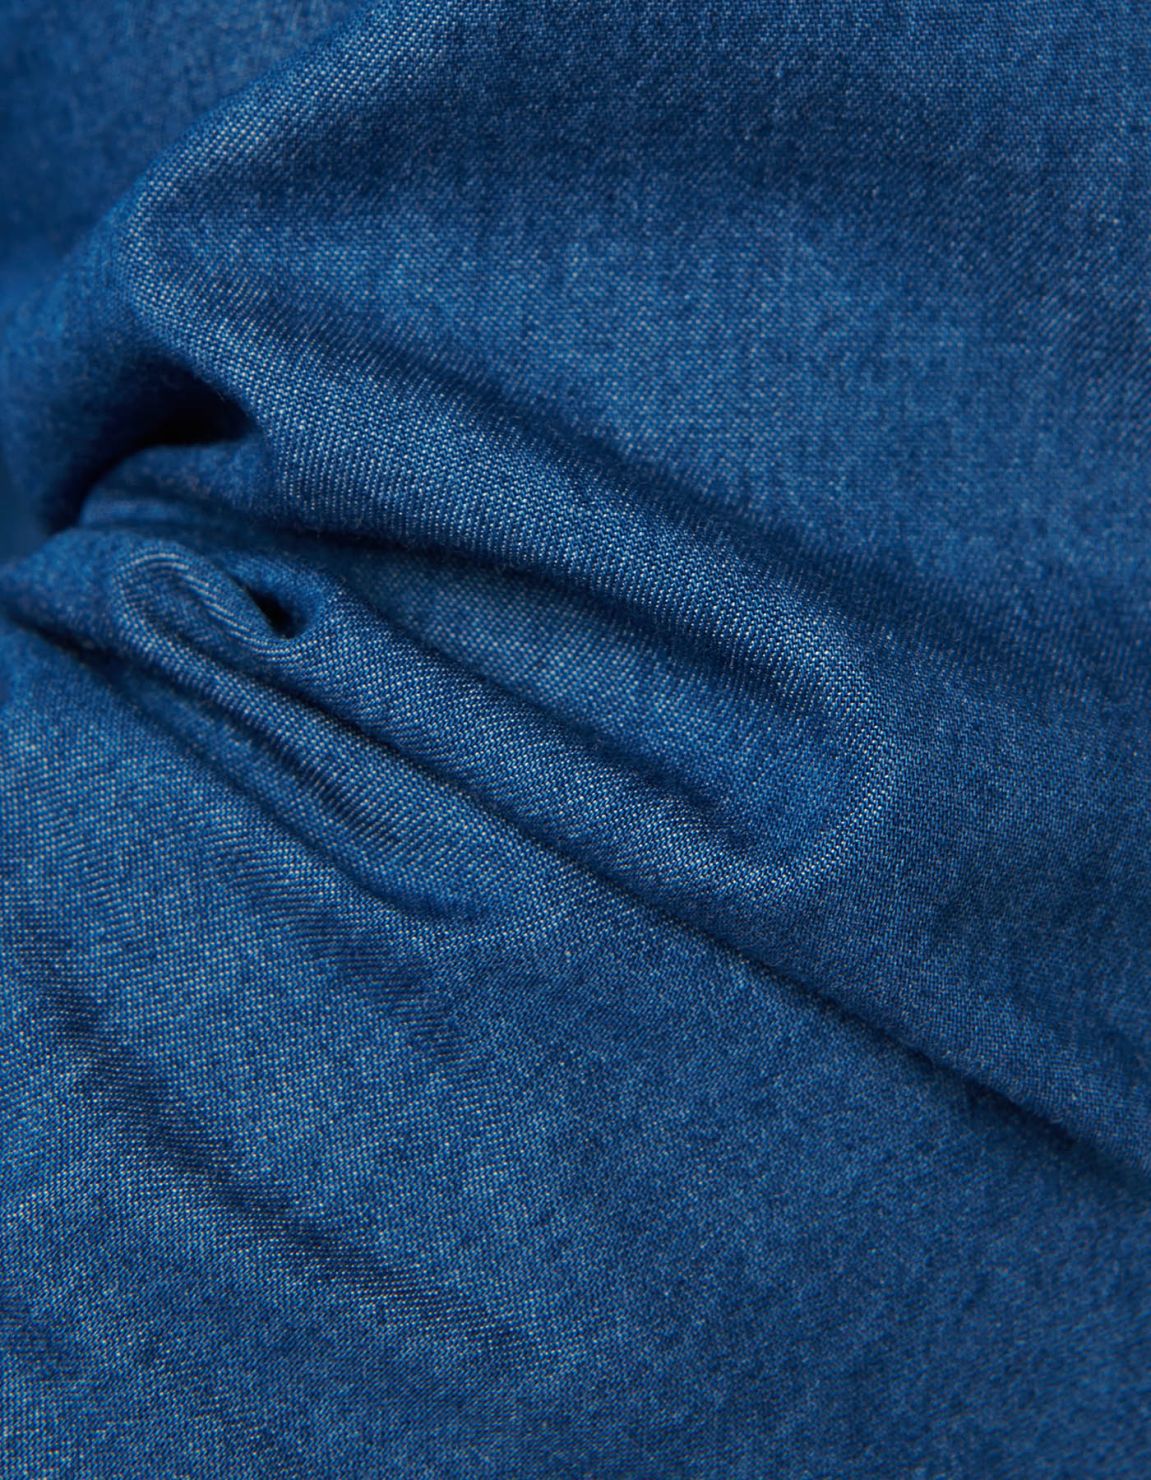 Chemise Col français Blue jeans Toile Unie Tailor Custom Fit 2